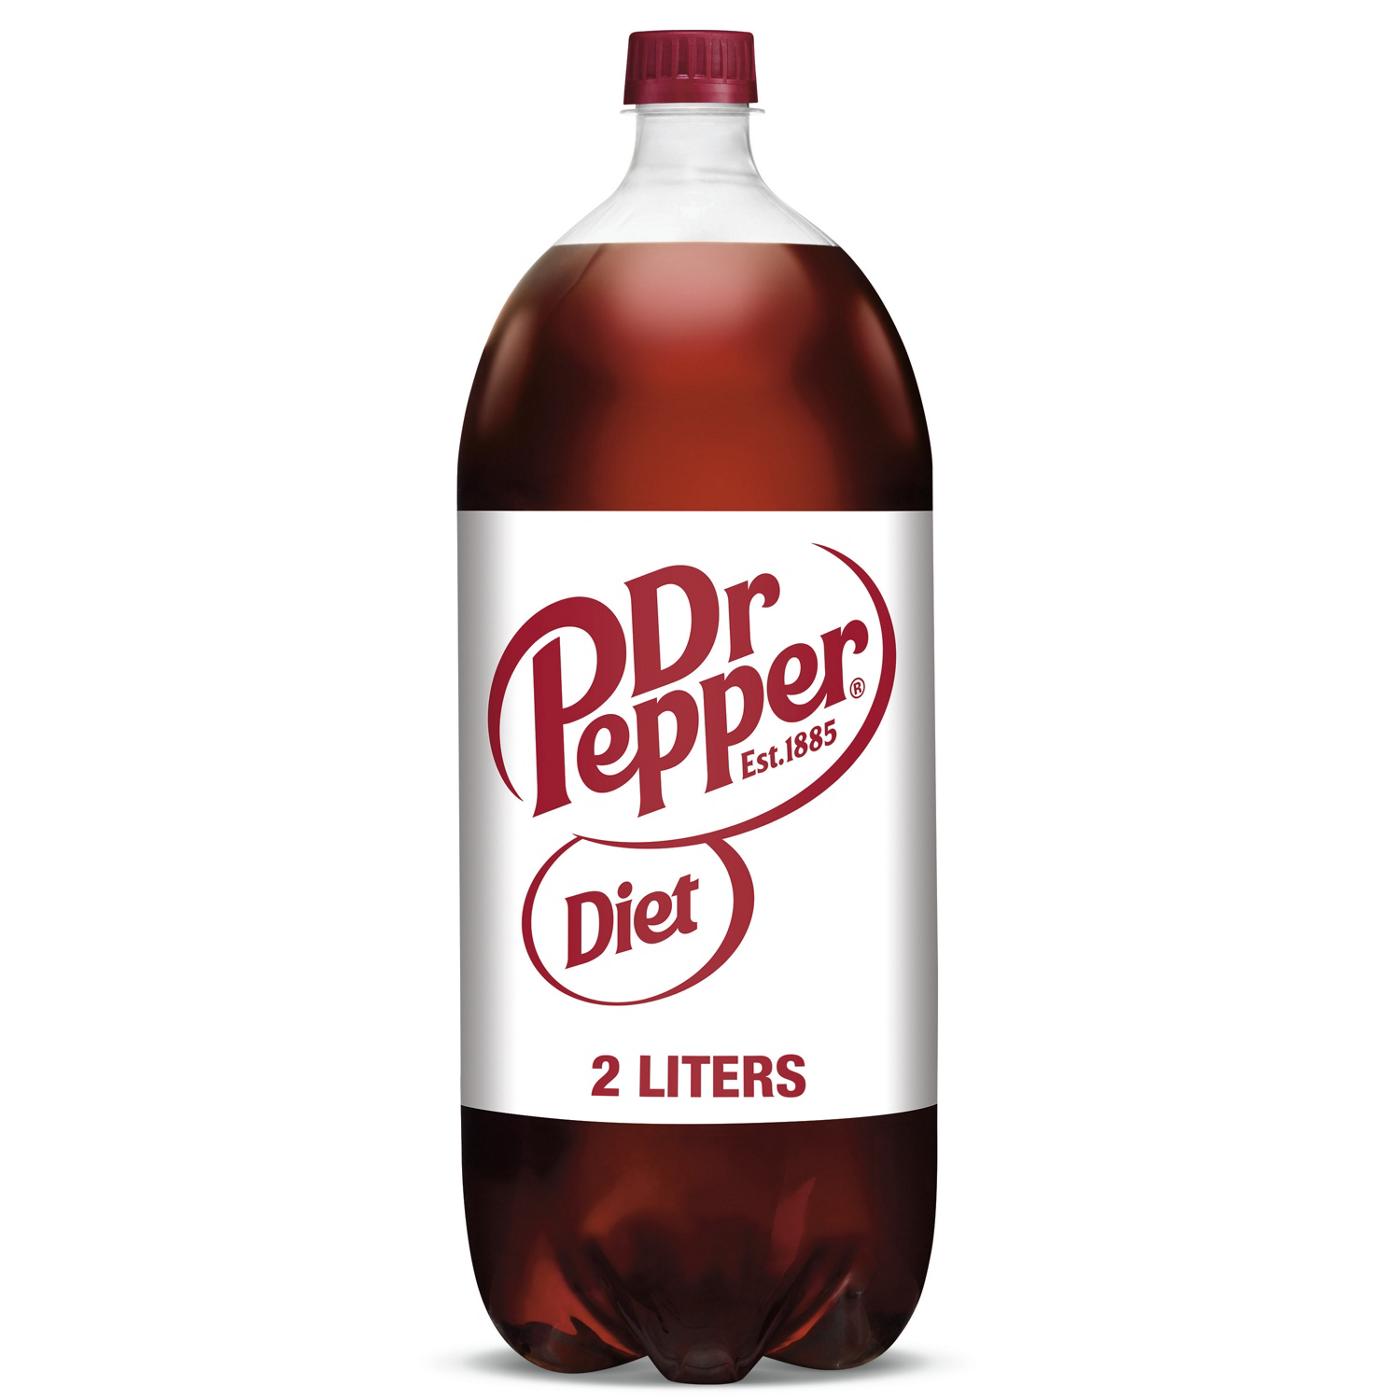 Dr Pepper - Wikipedia